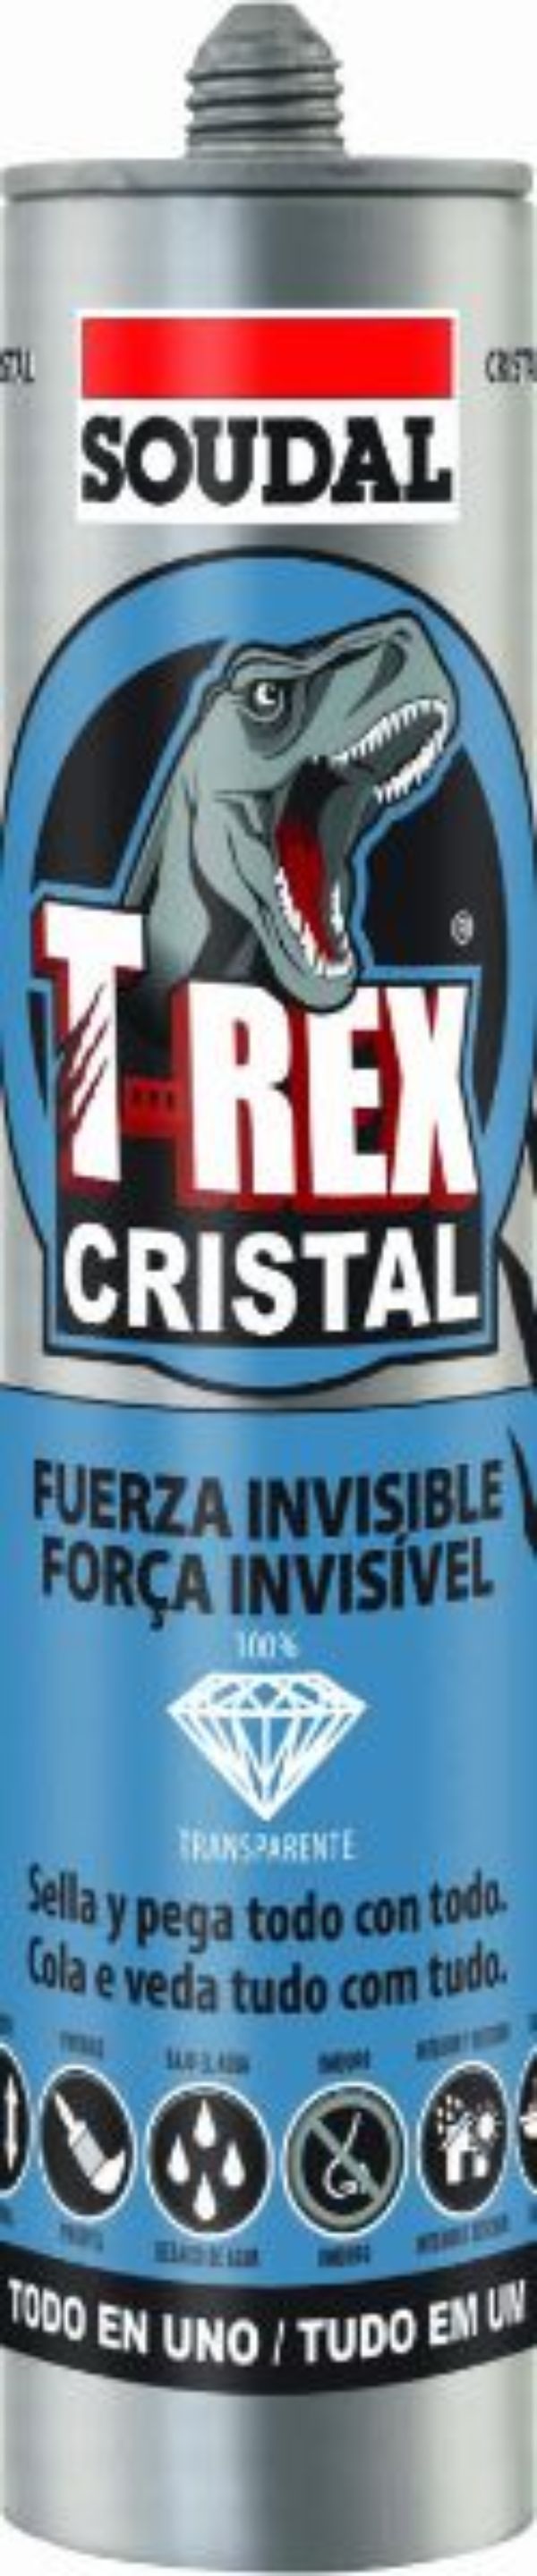 T-Rex cristal transparente Soudal